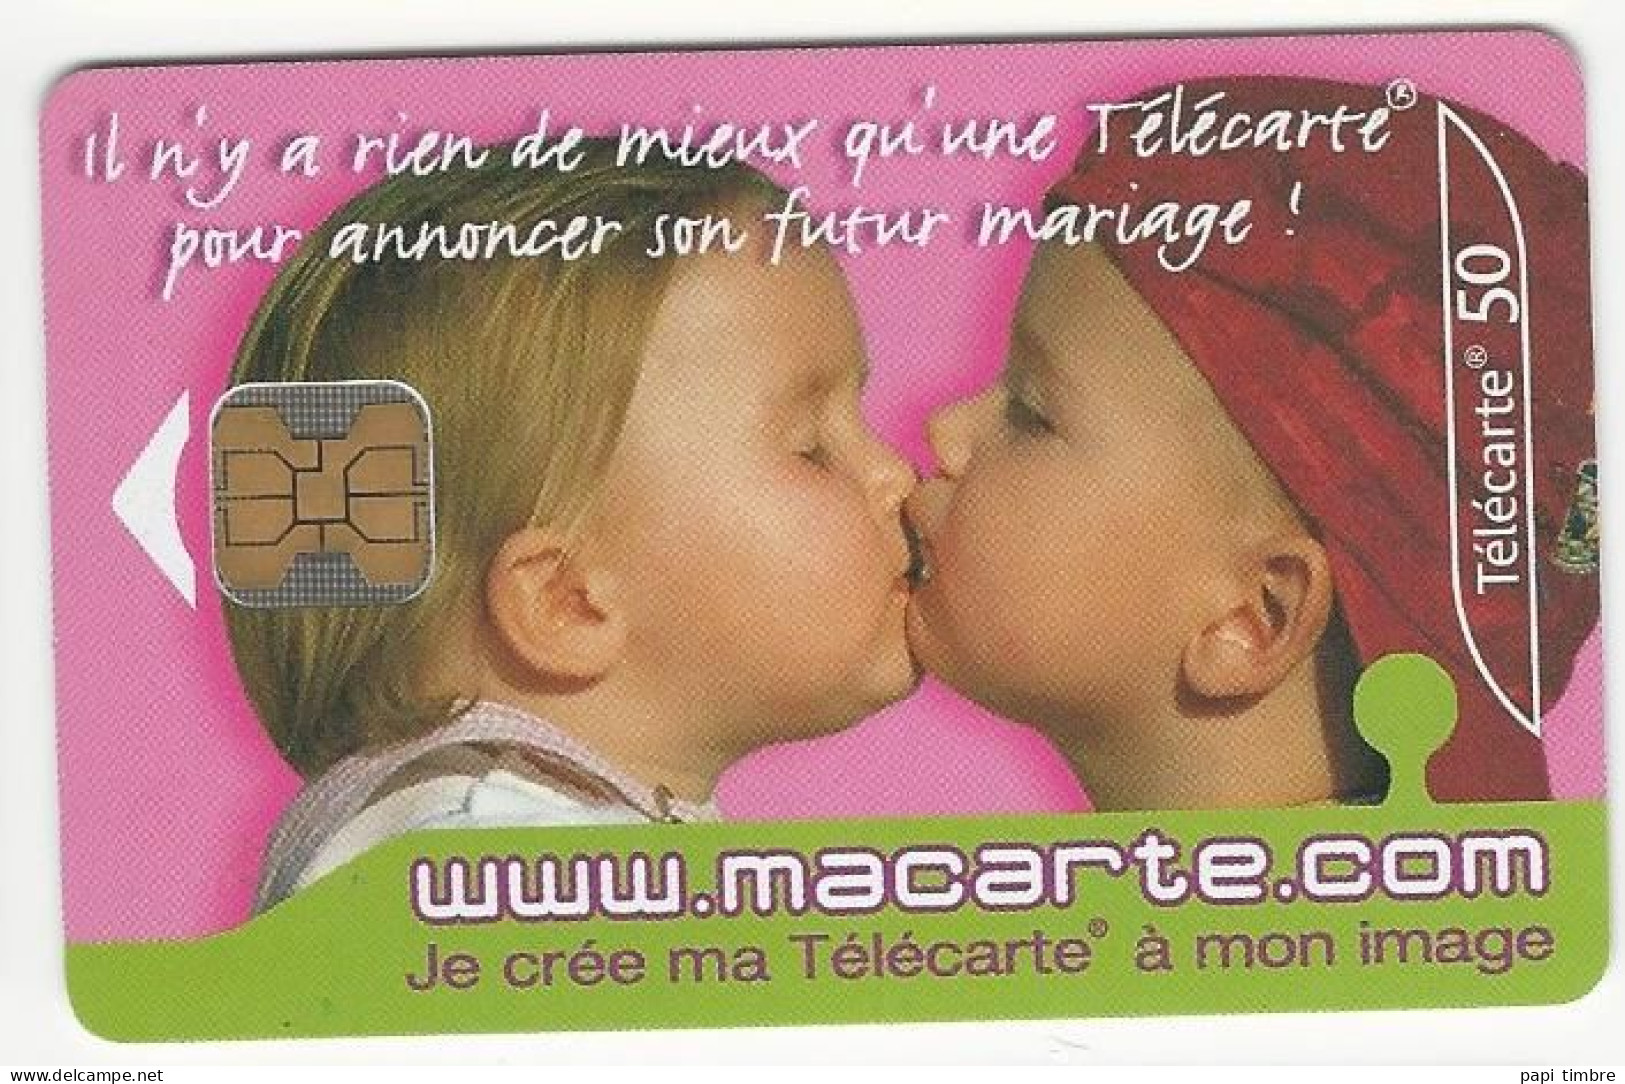 Télécarte "macarte.com" Je Crée Ma Télécarte à Mon Image - 50 Unités - Personajes